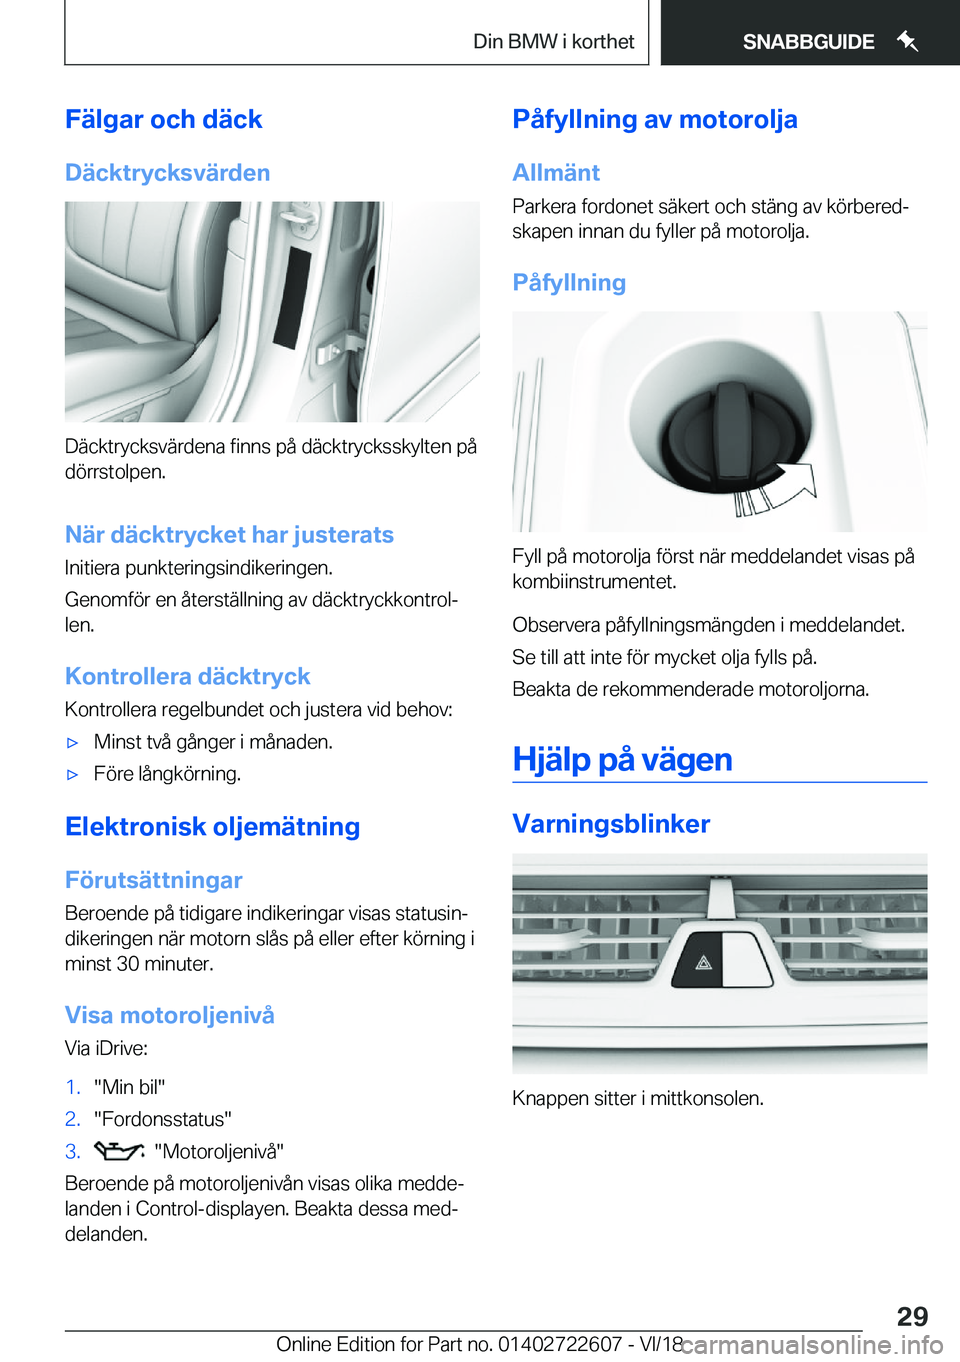 BMW 5 SERIES 2019  InstruktionsbÖcker (in Swedish) �F�ä�l�g�a�r��o�c�h��d�ä�c�k
�D�ä�c�k�t�r�y�c�k�s�v�ä�r�d�e�n
�D�ä�c�k�t�r�y�c�k�s�v�ä�r�d�e�n�a��f�i�n�n�s��p�å��d�ä�c�k�t�r�y�c�k�s�s�k�y�l�t�e�n��p�å
�d�